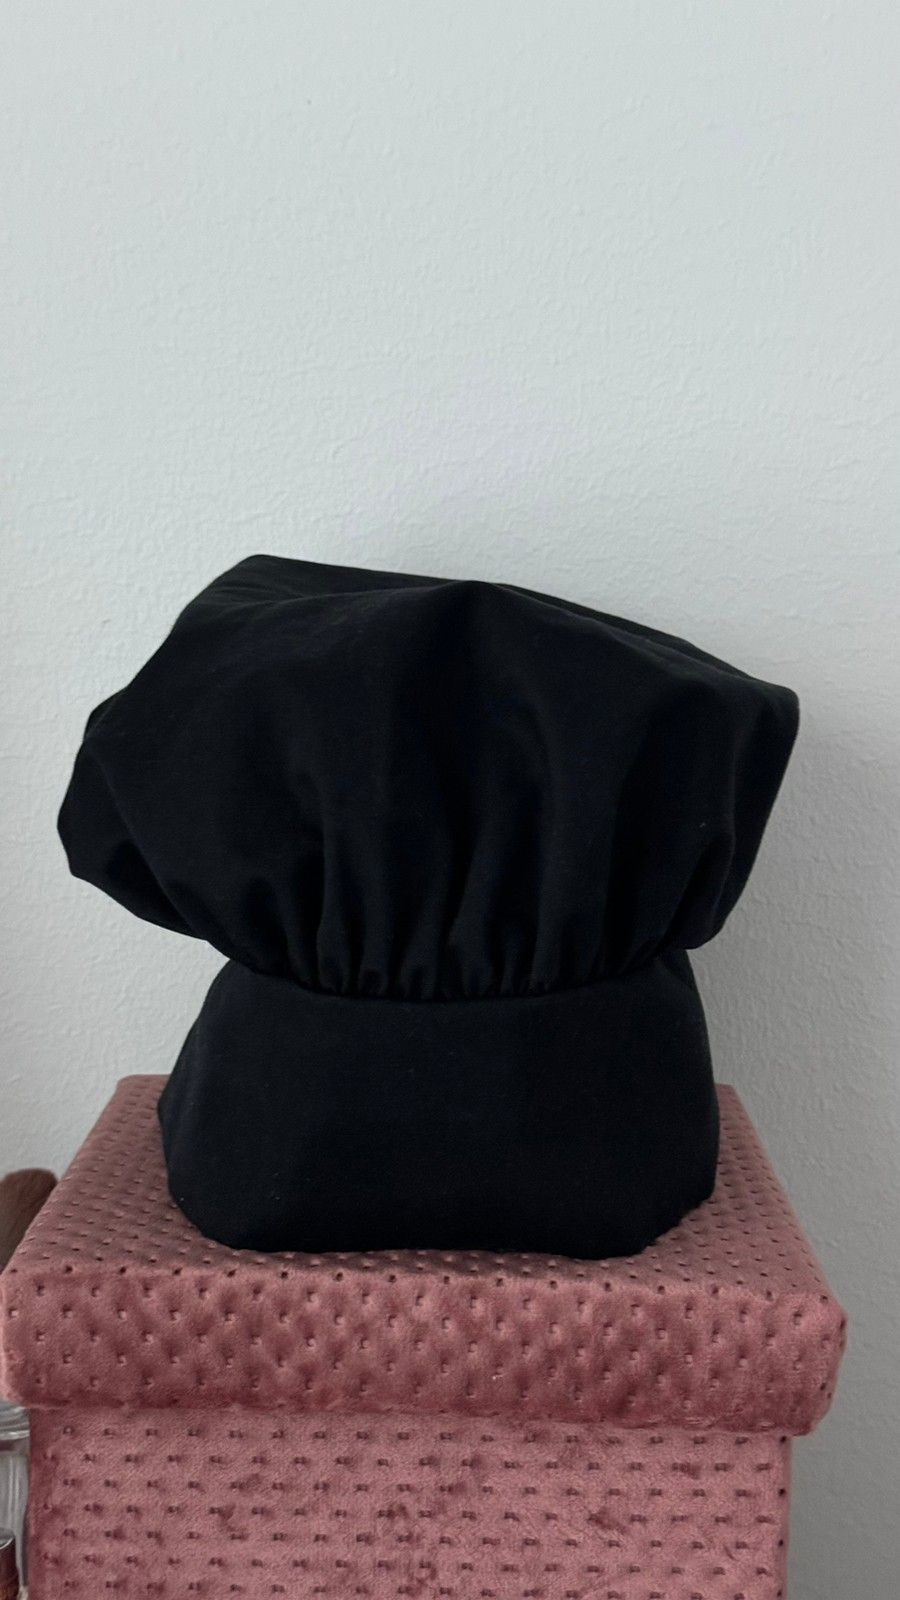 Kokin hattu. Image wear